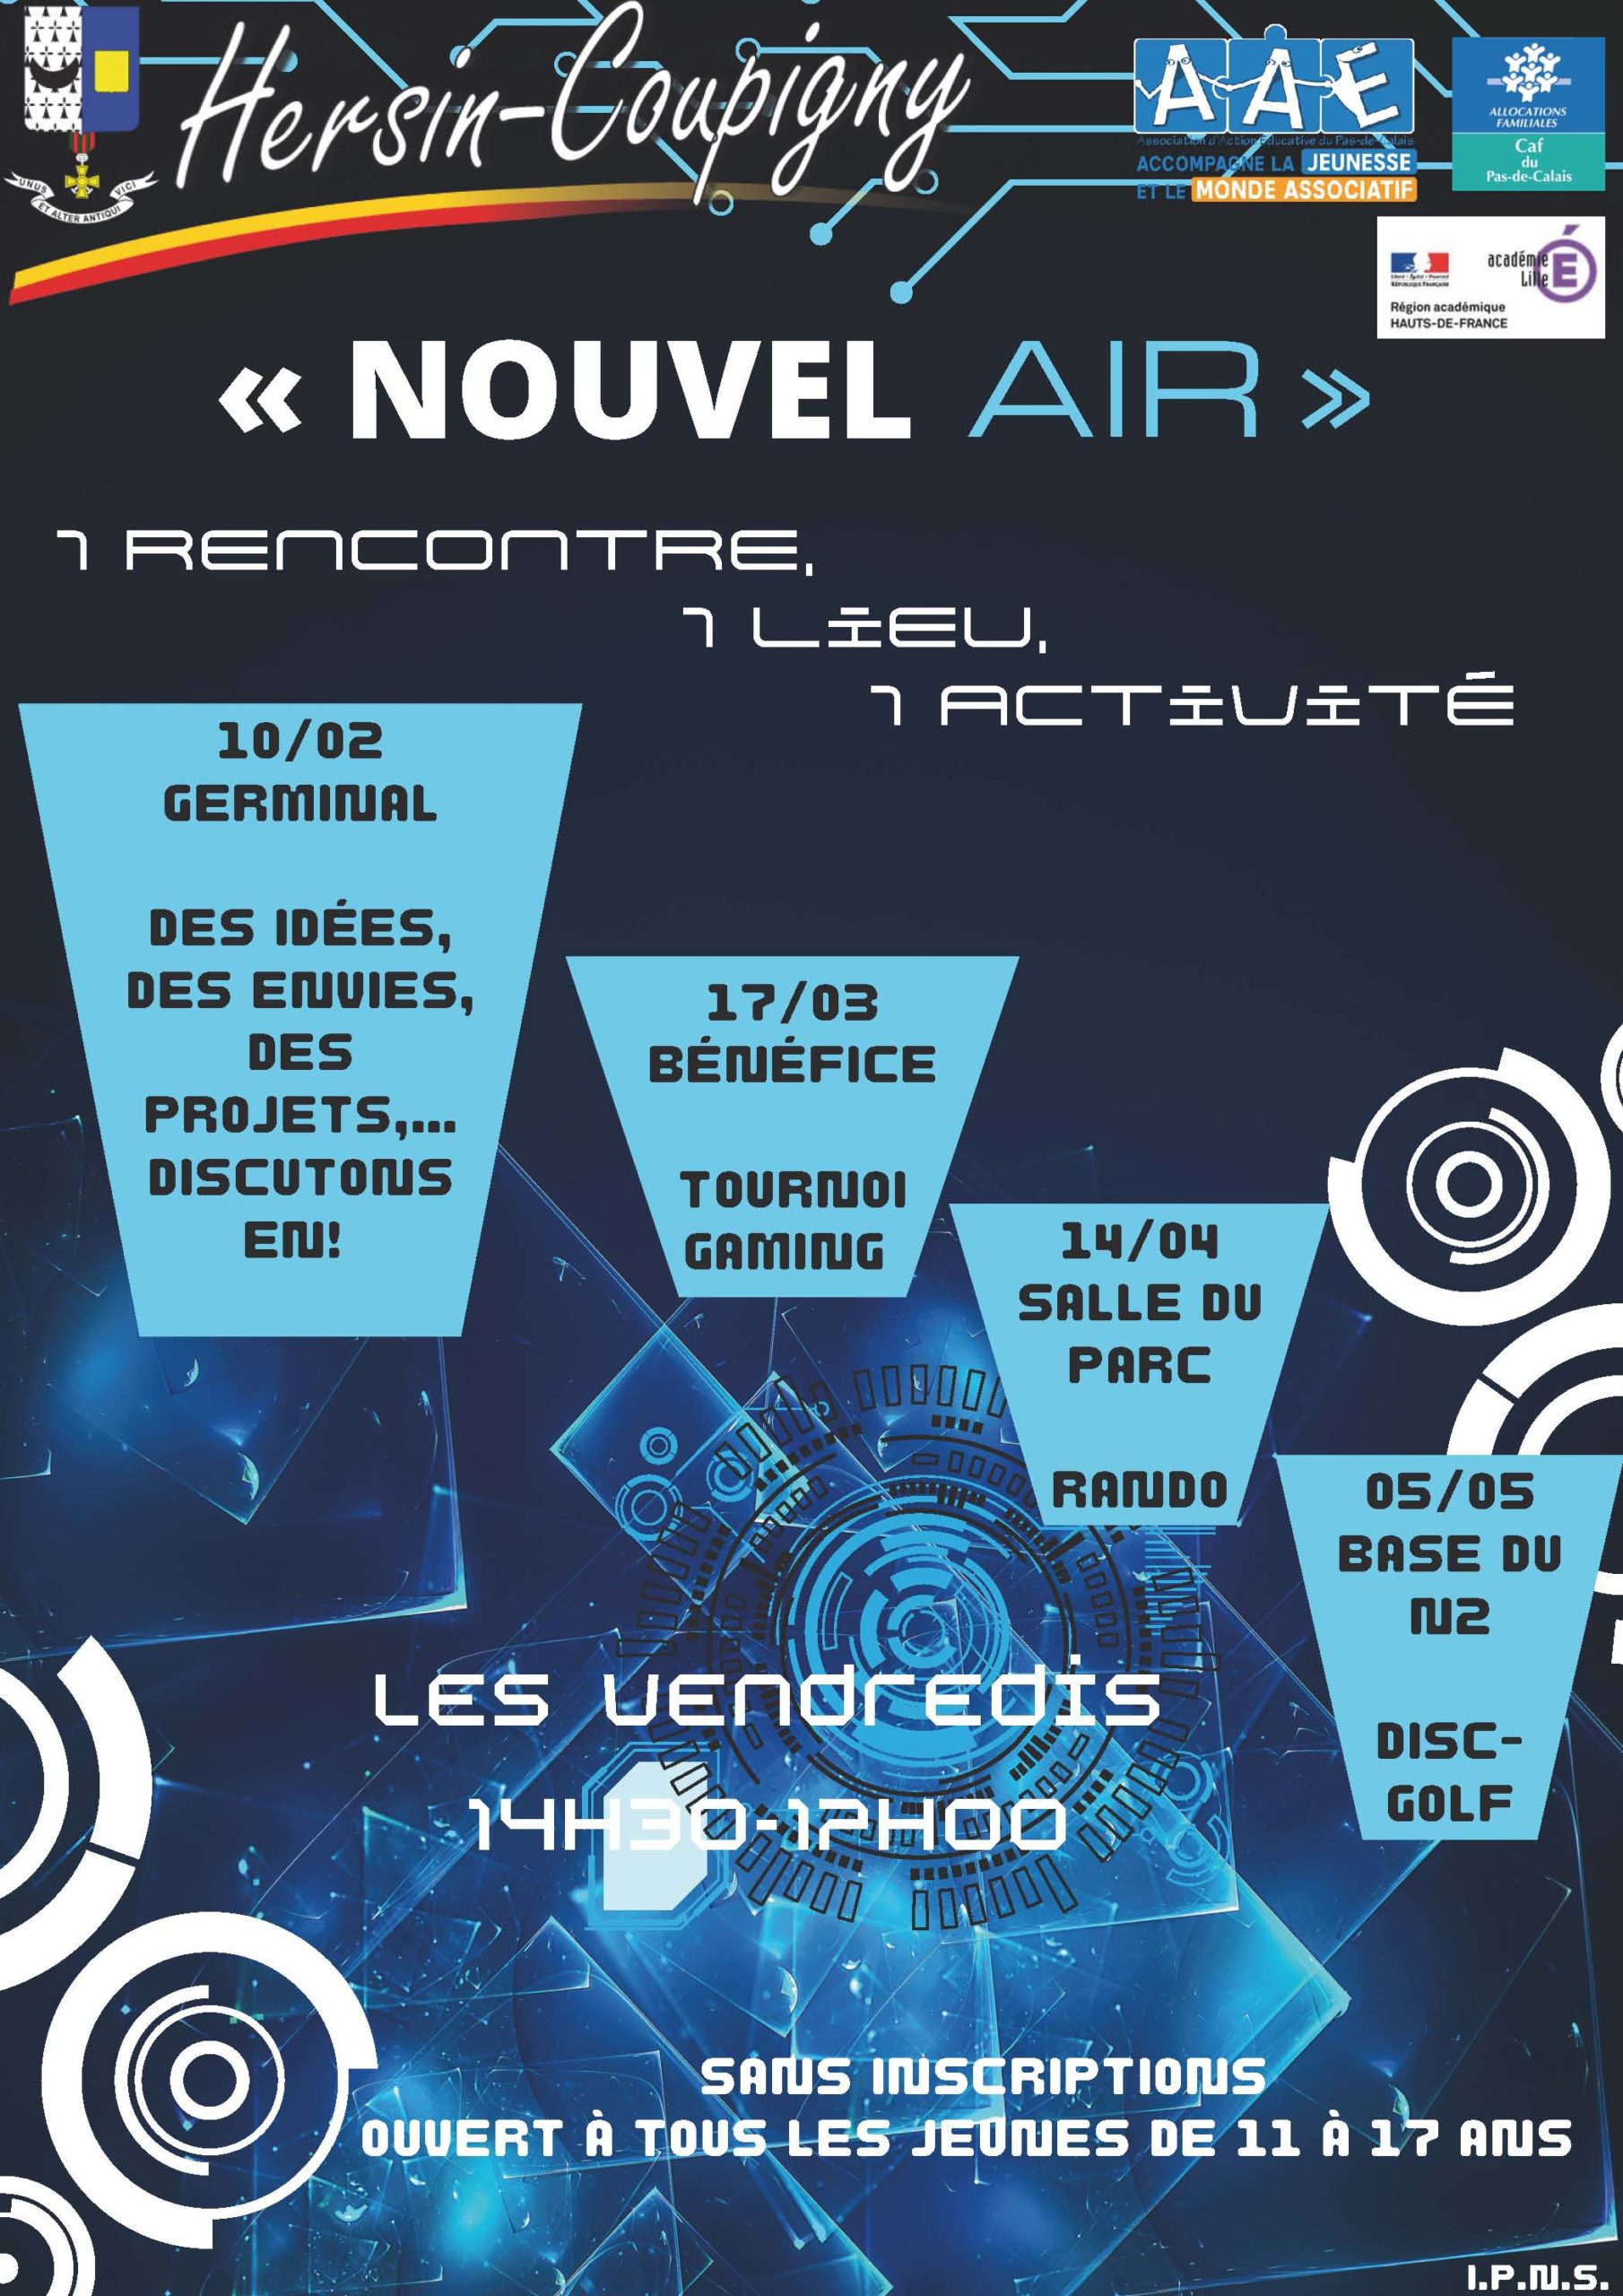 Nouvel Air : Rando @ Salle du Parc | Hersin-Coupigny | Hauts-de-France | France